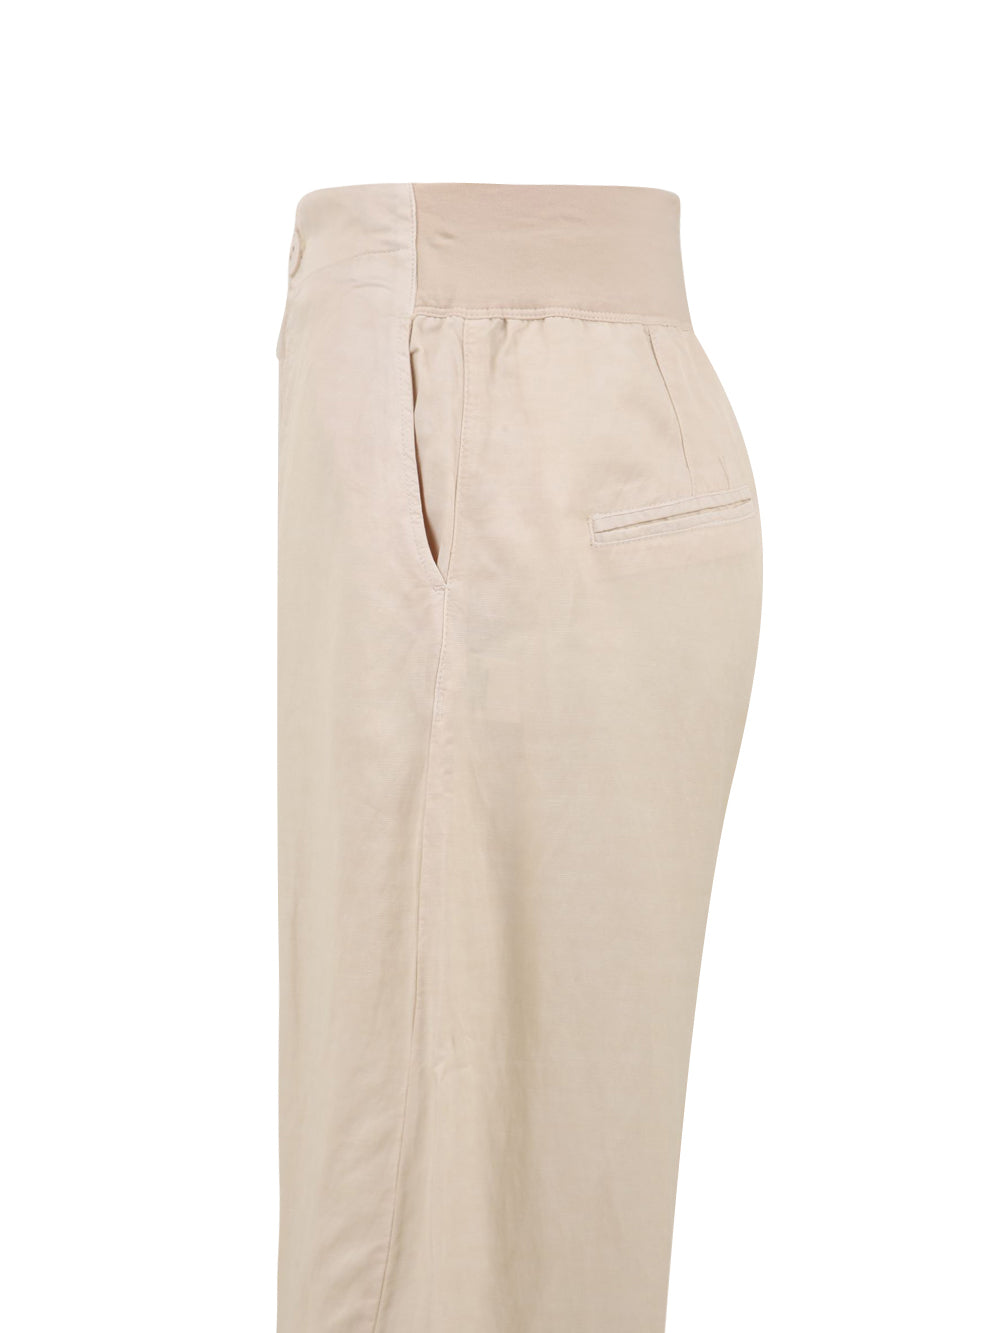 Pantalone EUROPEAN CULTURE Donna 06FU-7083 Bianco